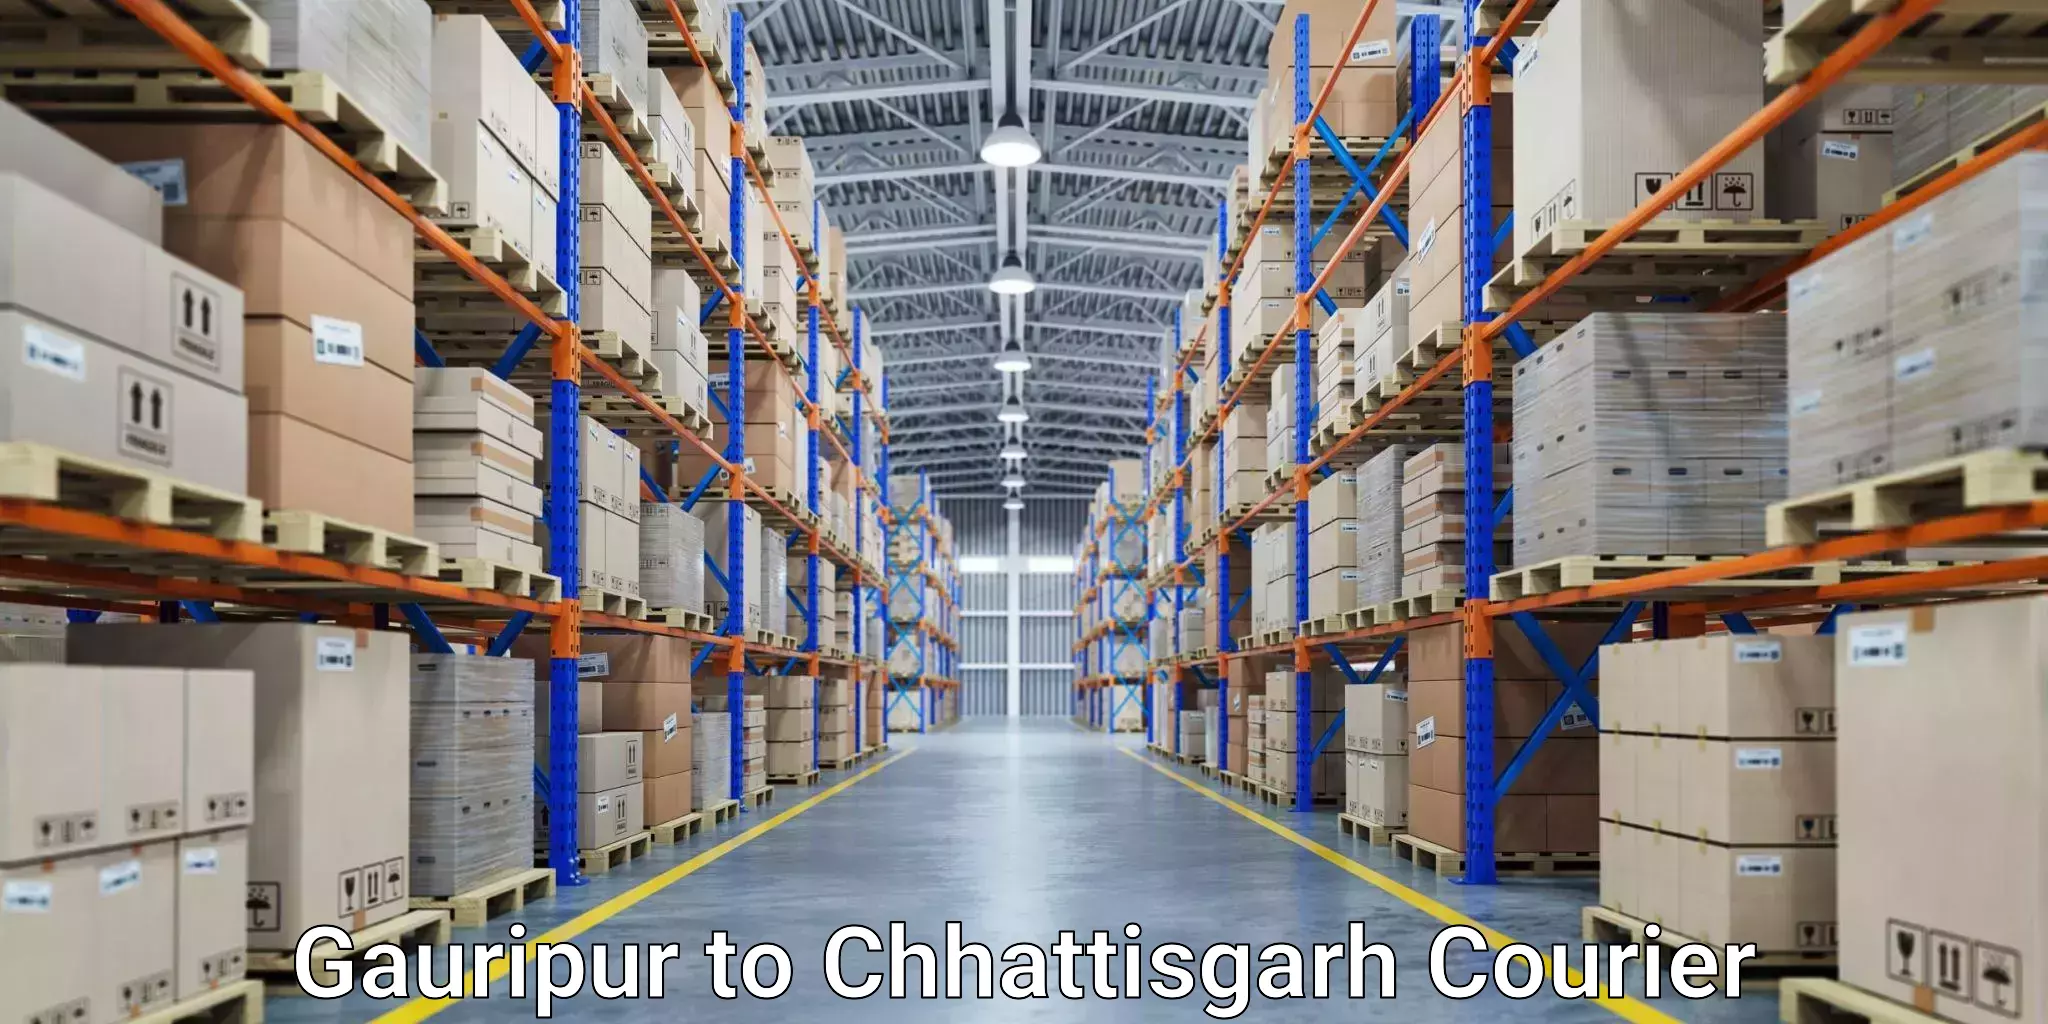 Custom courier strategies Gauripur to Mahasamund